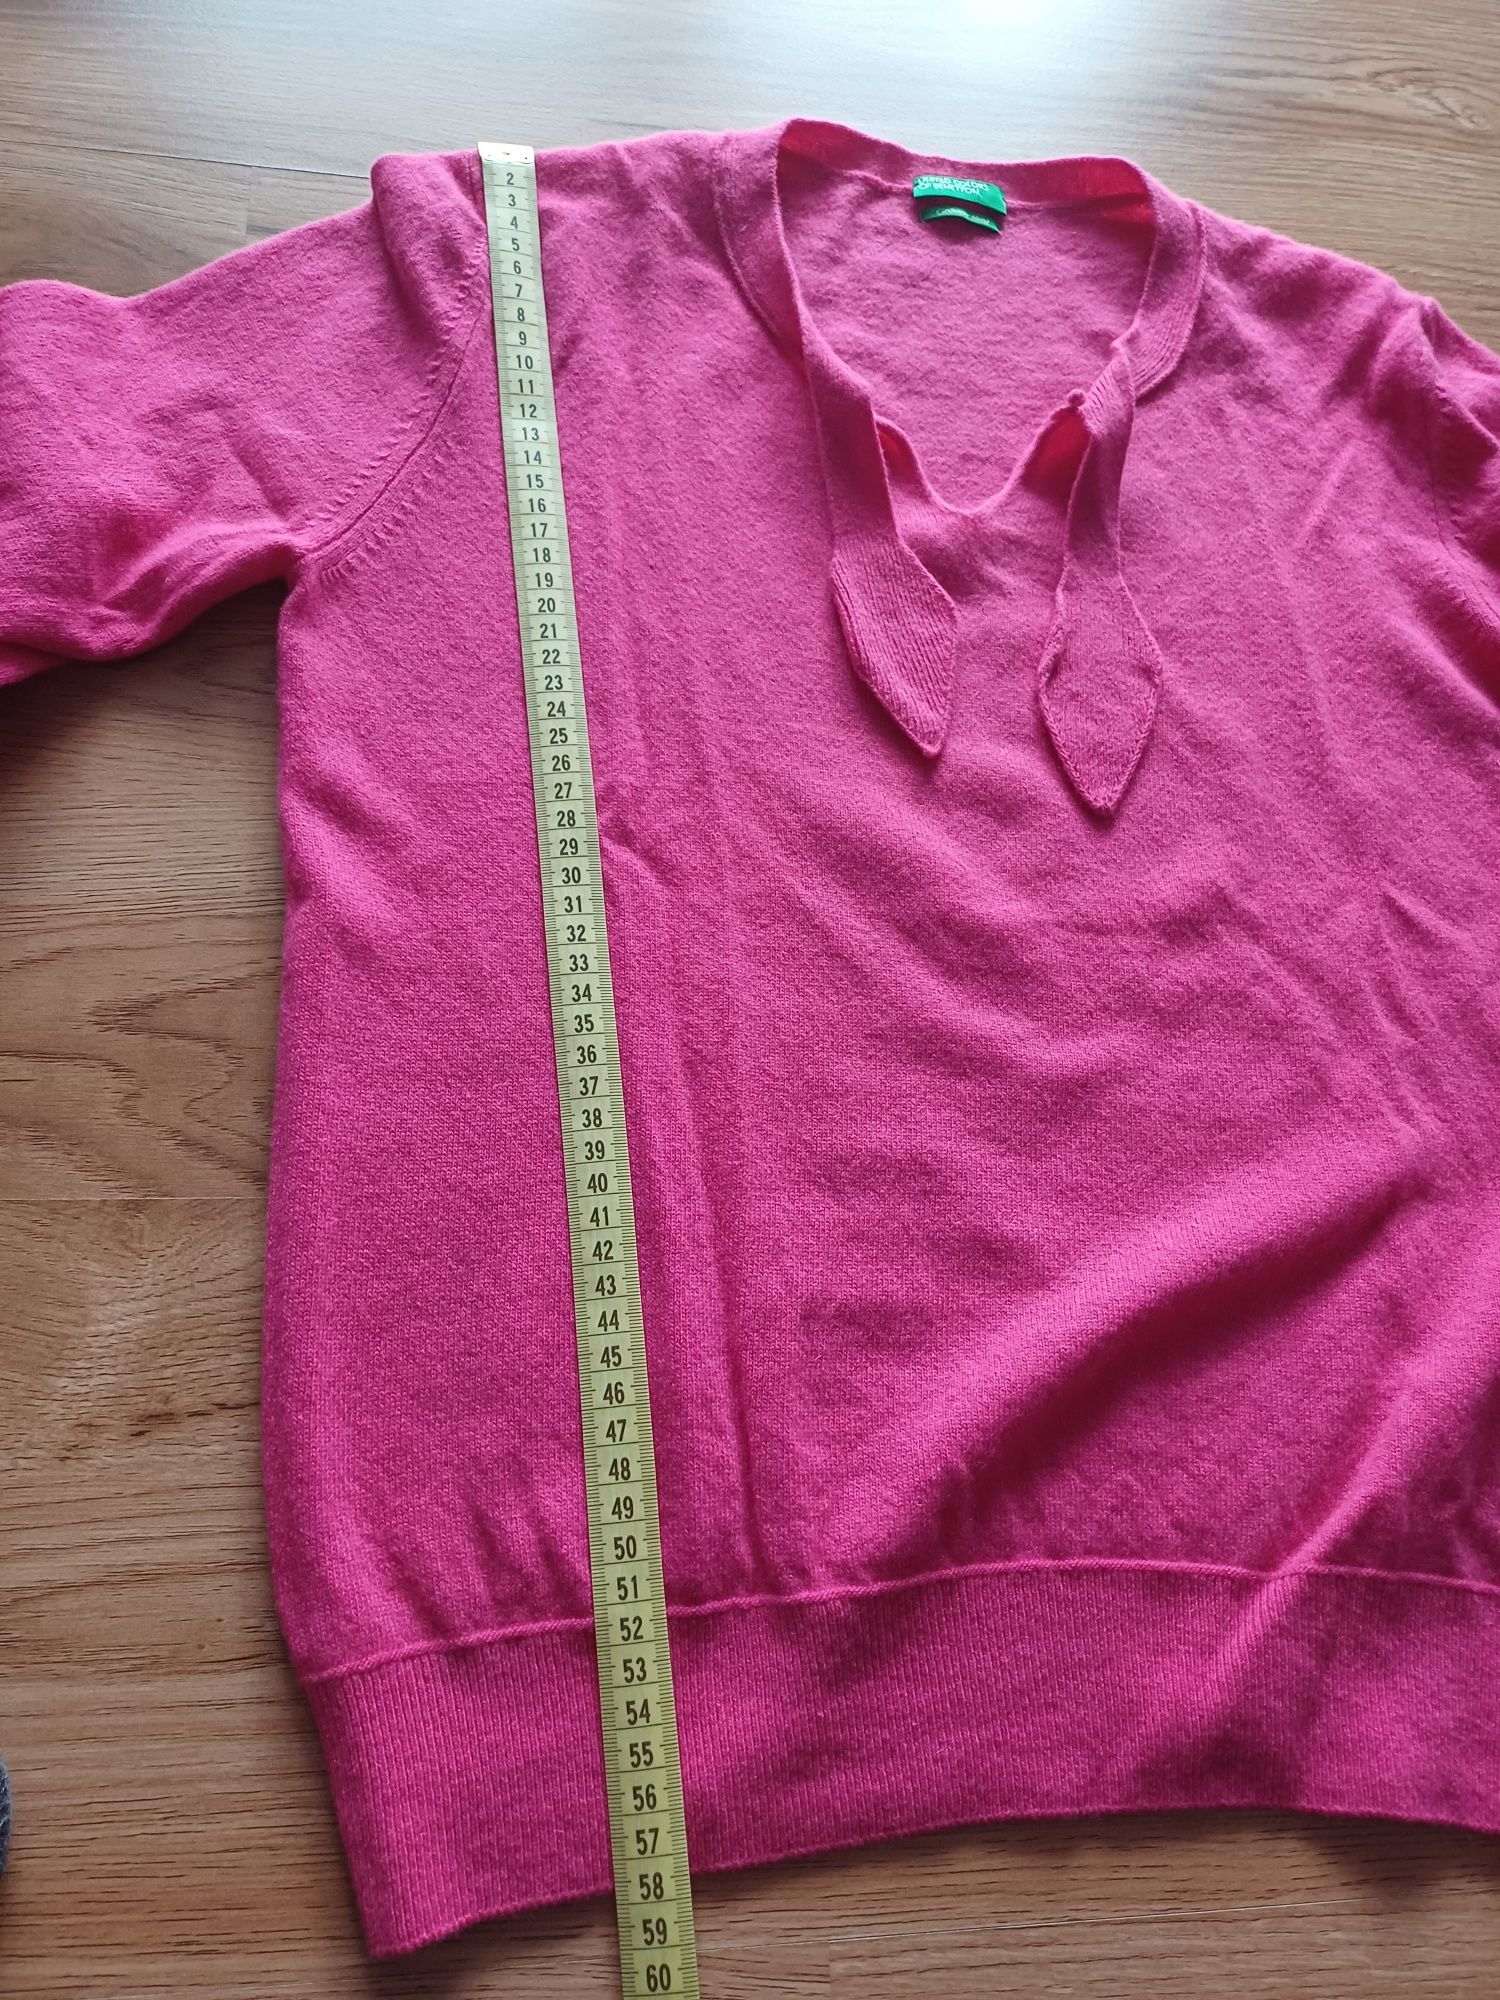 Sweter różowy wełniany z dodatkiem kaszmiru, rozmiar 38